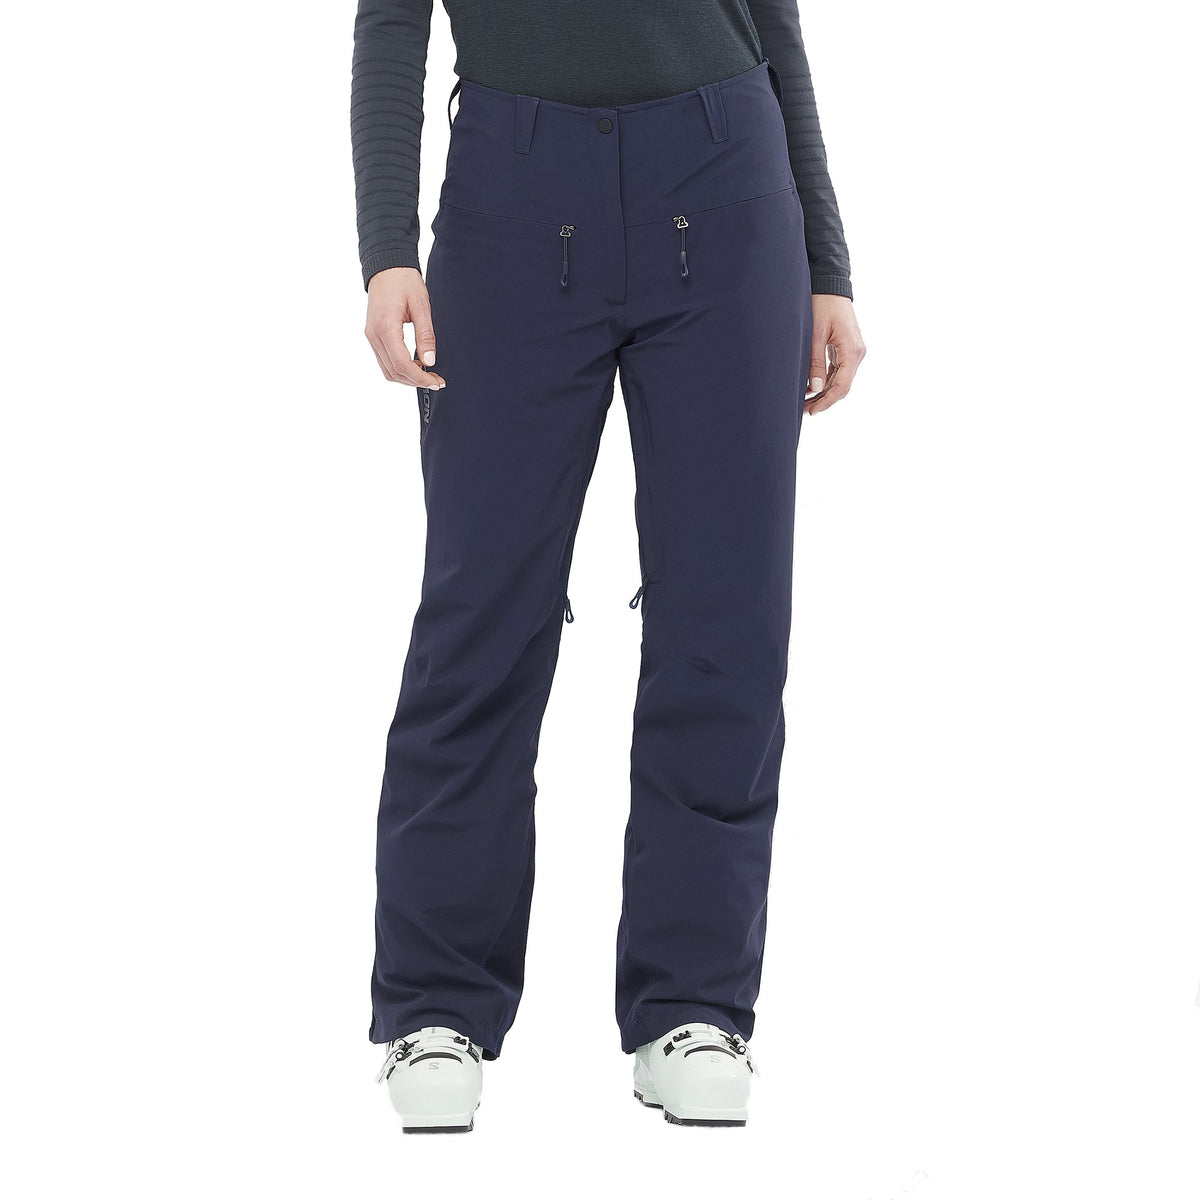 Women’s Ski Bib Pants - FR 900 Blue